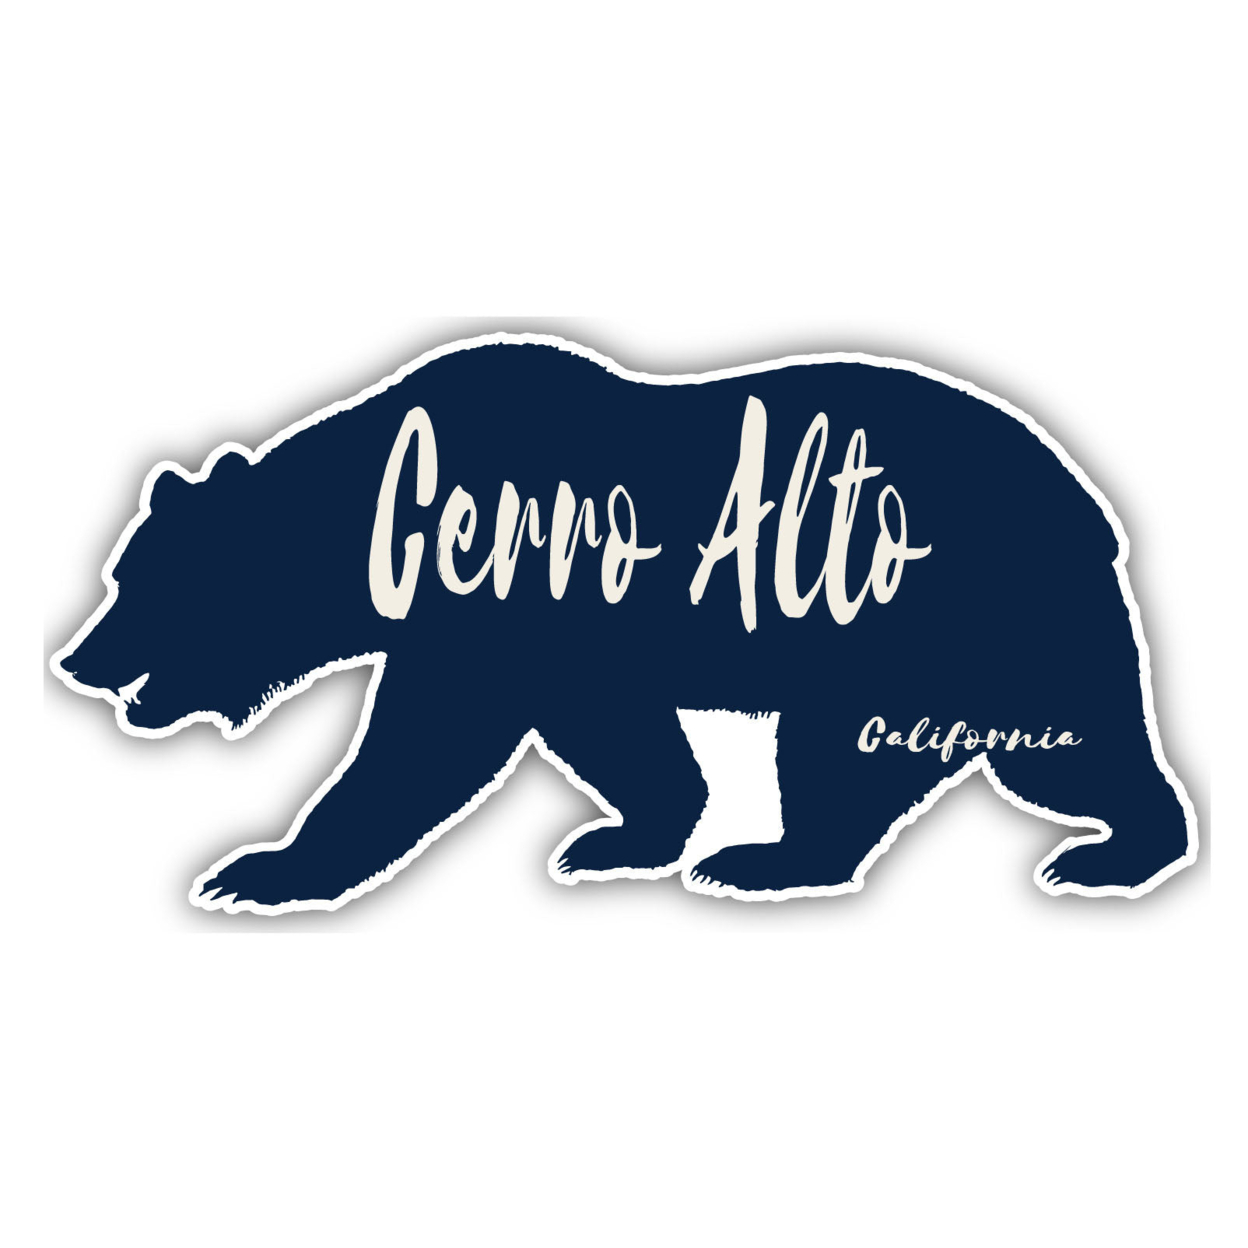 Cerro Alto California Souvenir Decorative Stickers (Choose Theme And Size) - Single Unit, 2-Inch, Bear